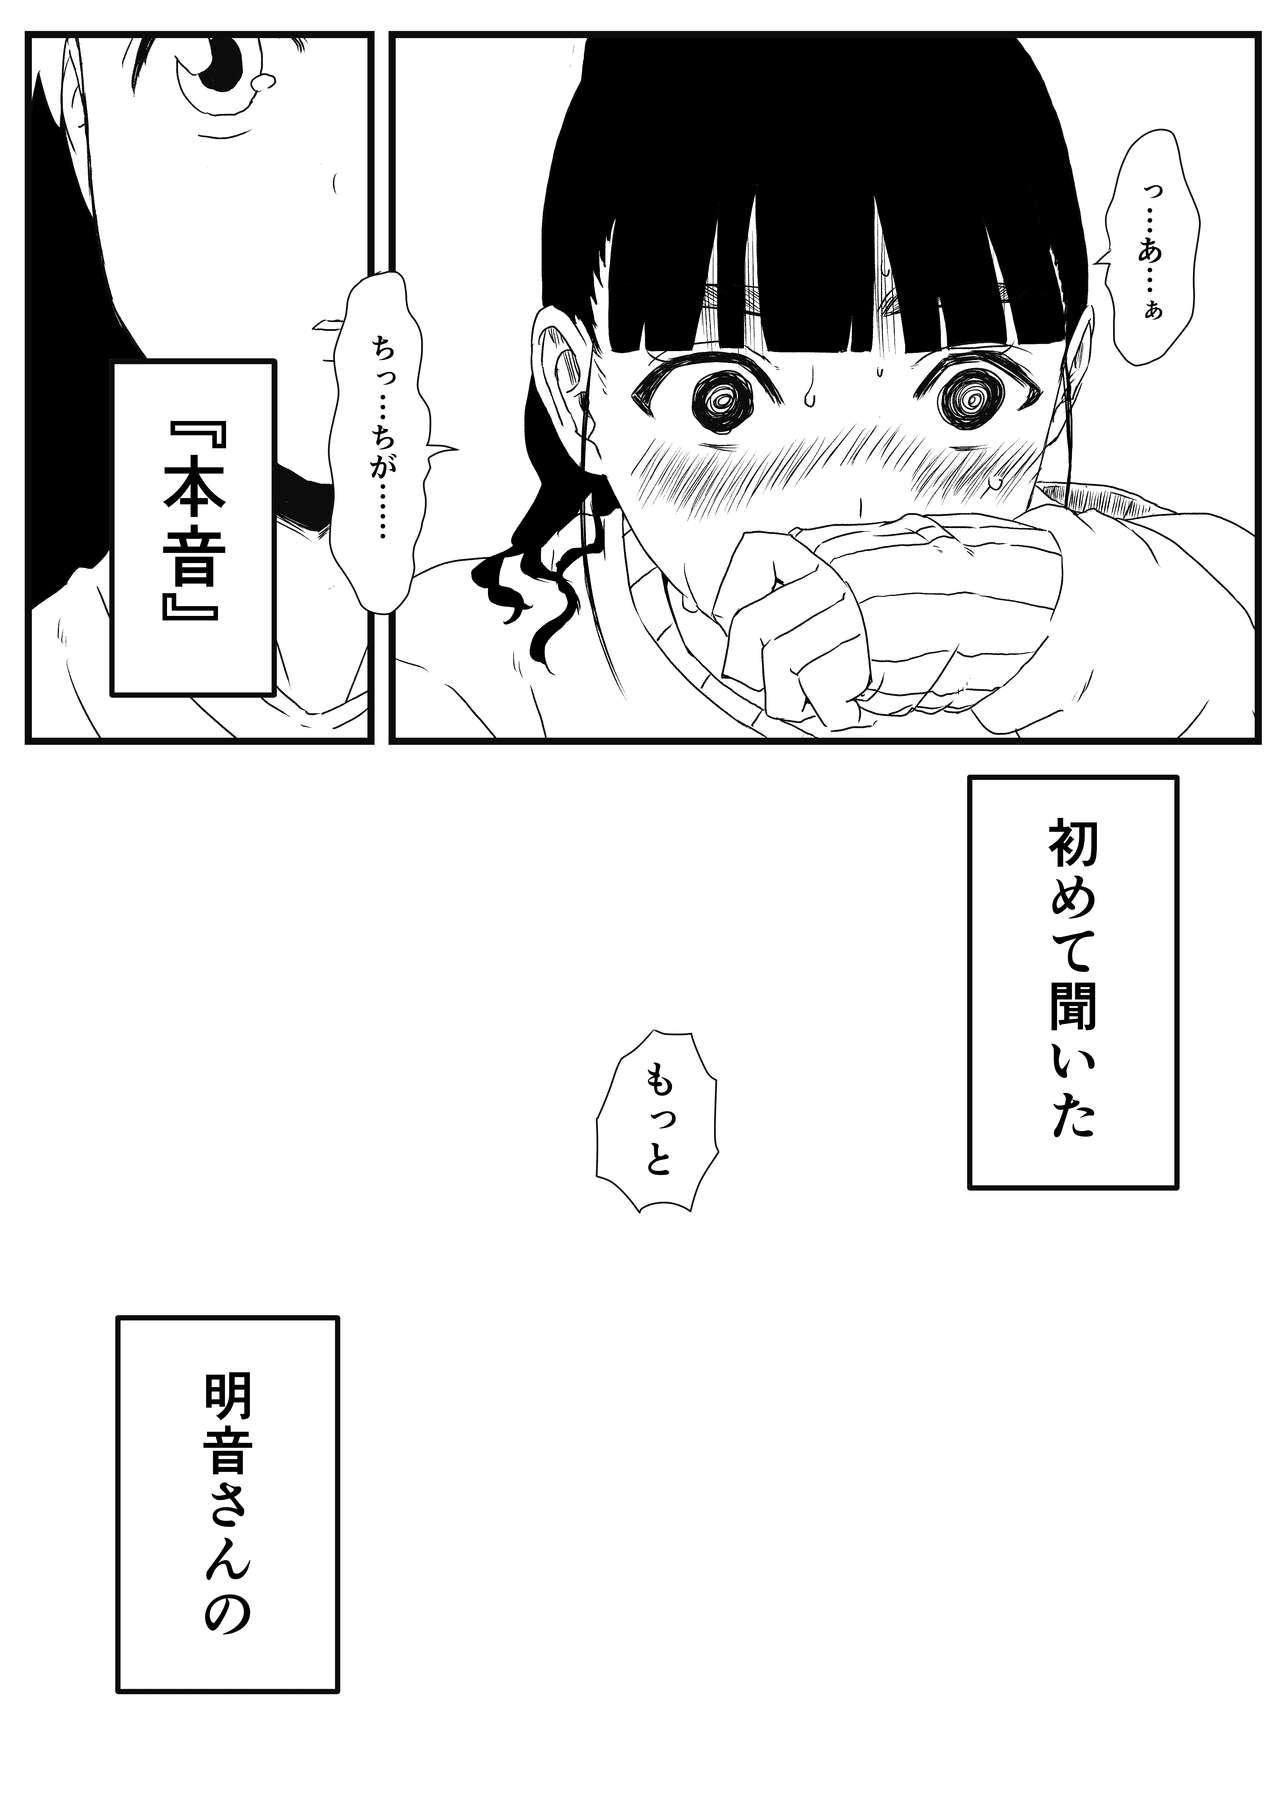 [Senaka] Giri no Ane to no 7-kakan Seikatsu - 1 30